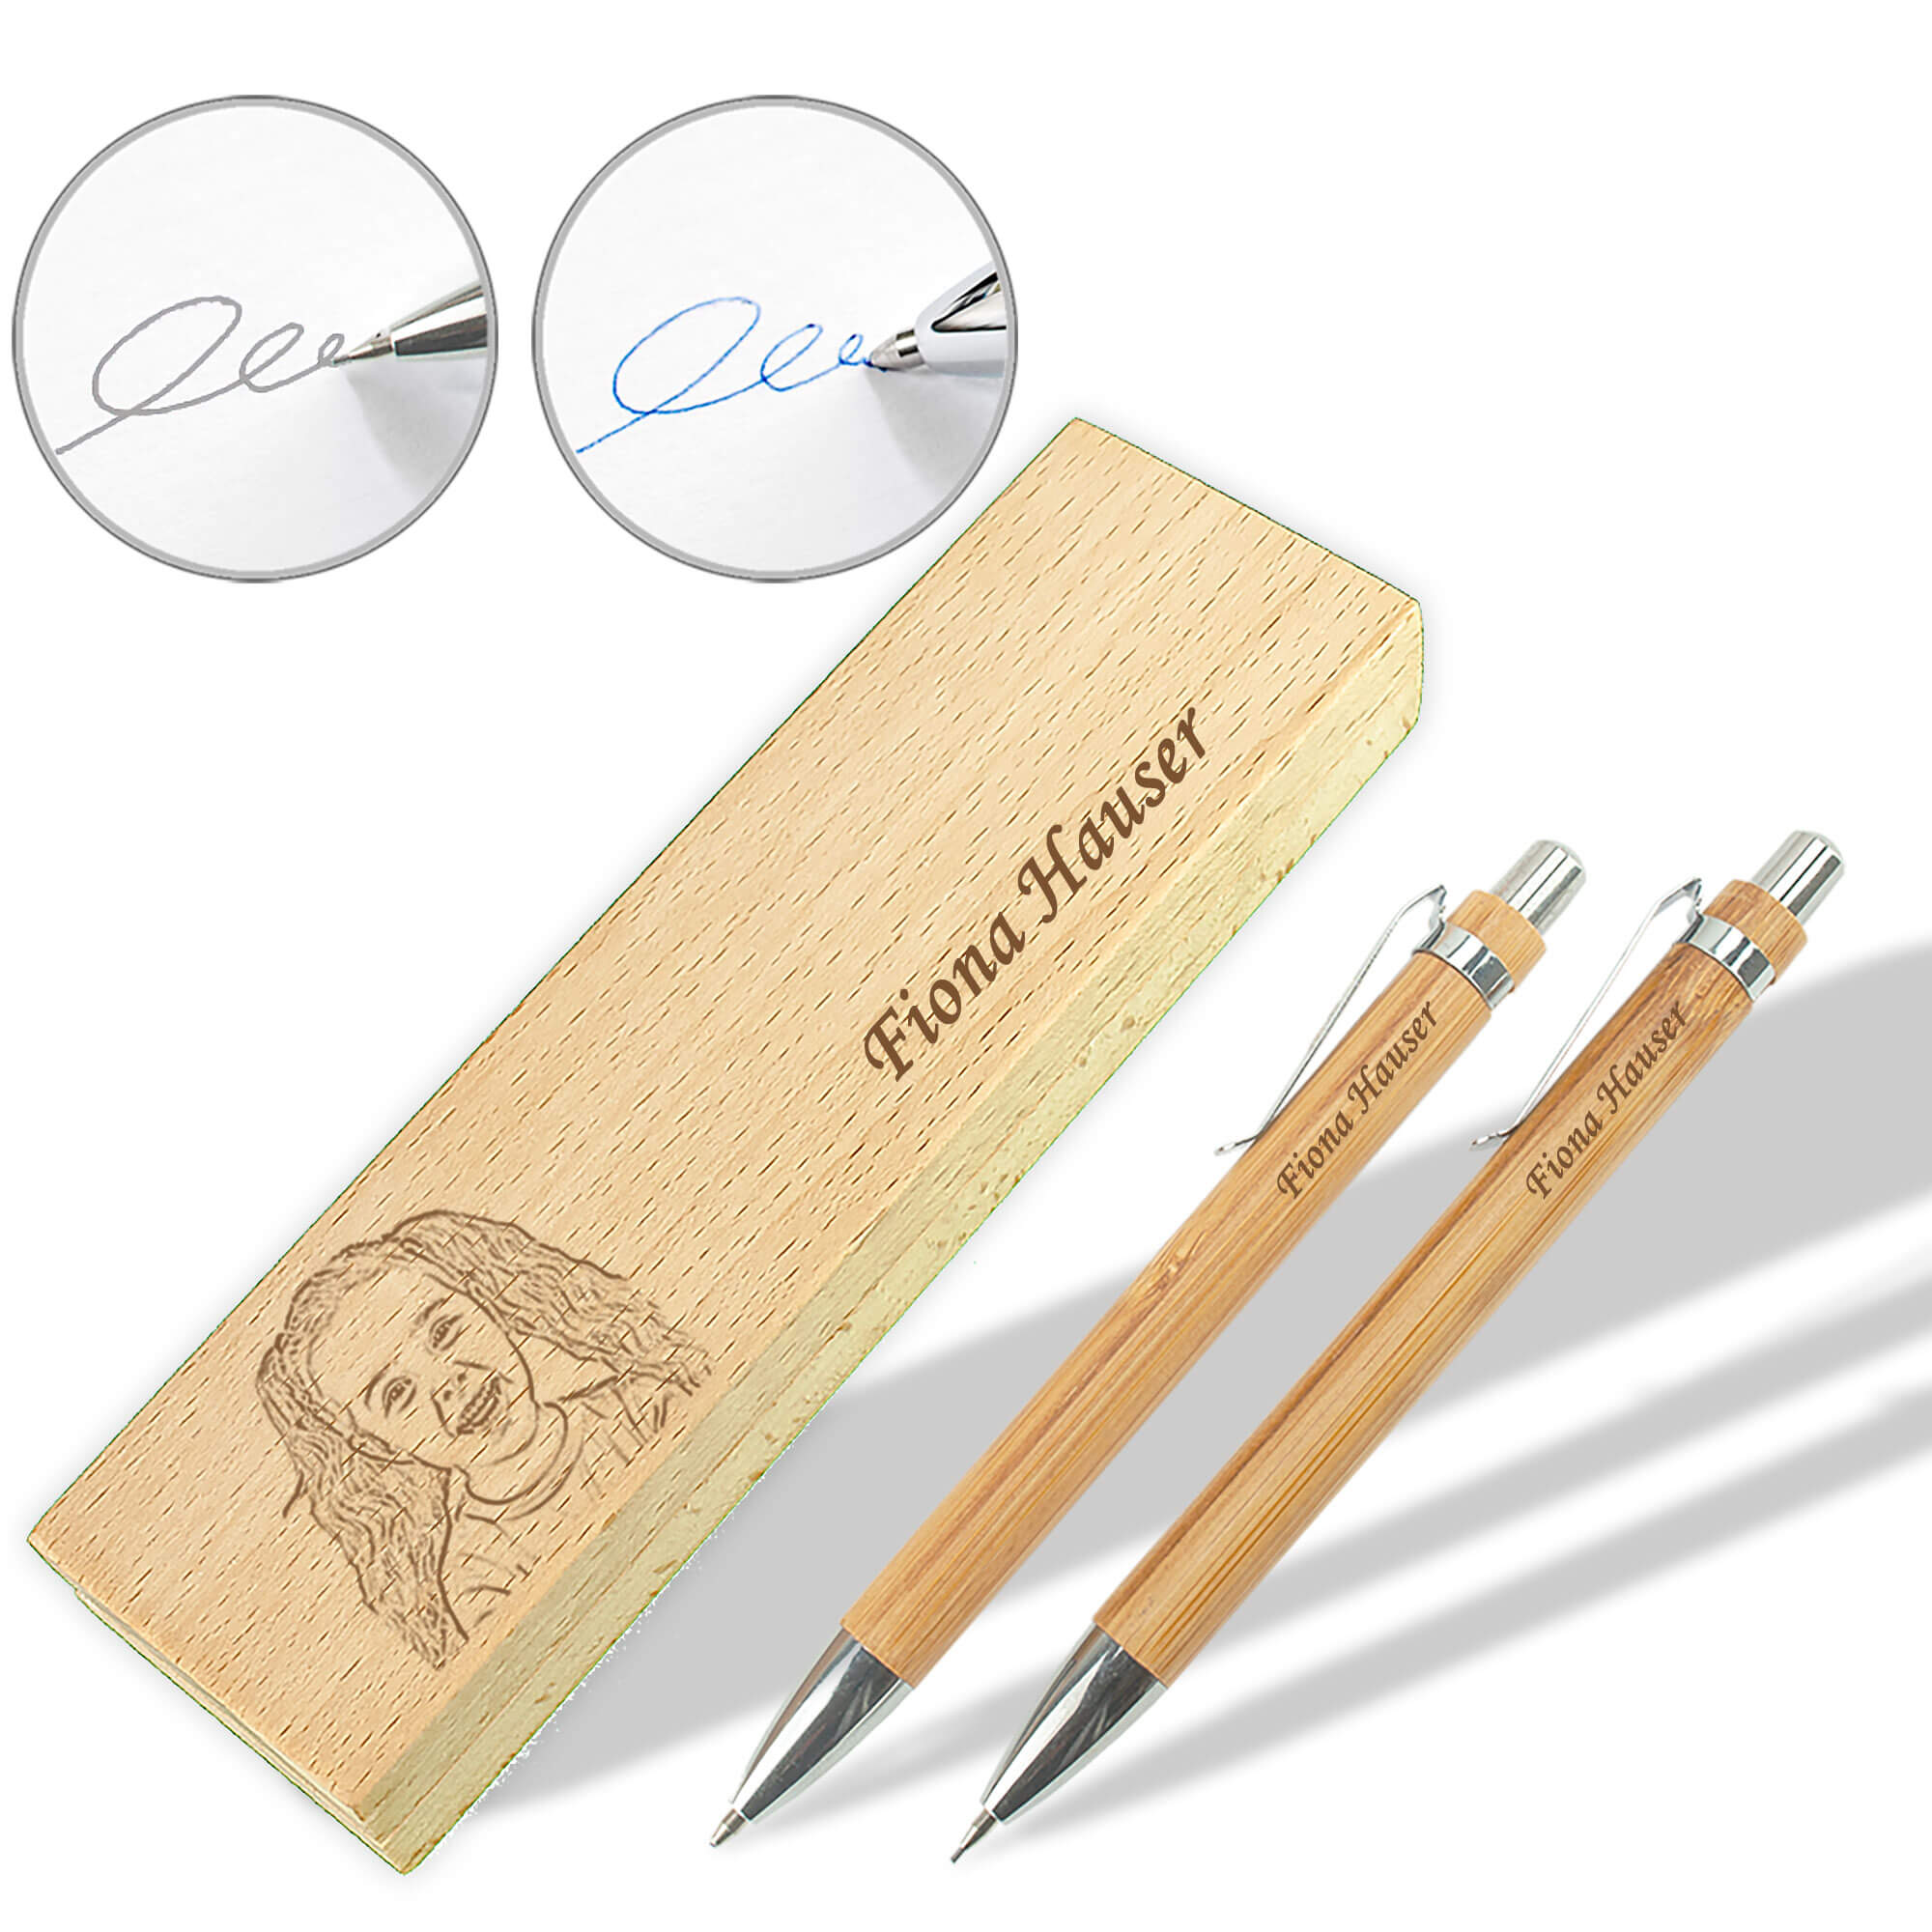 Schreibset aus Buchenholz mit Druckbleistift und Kugelschreiber inklusive Gravur